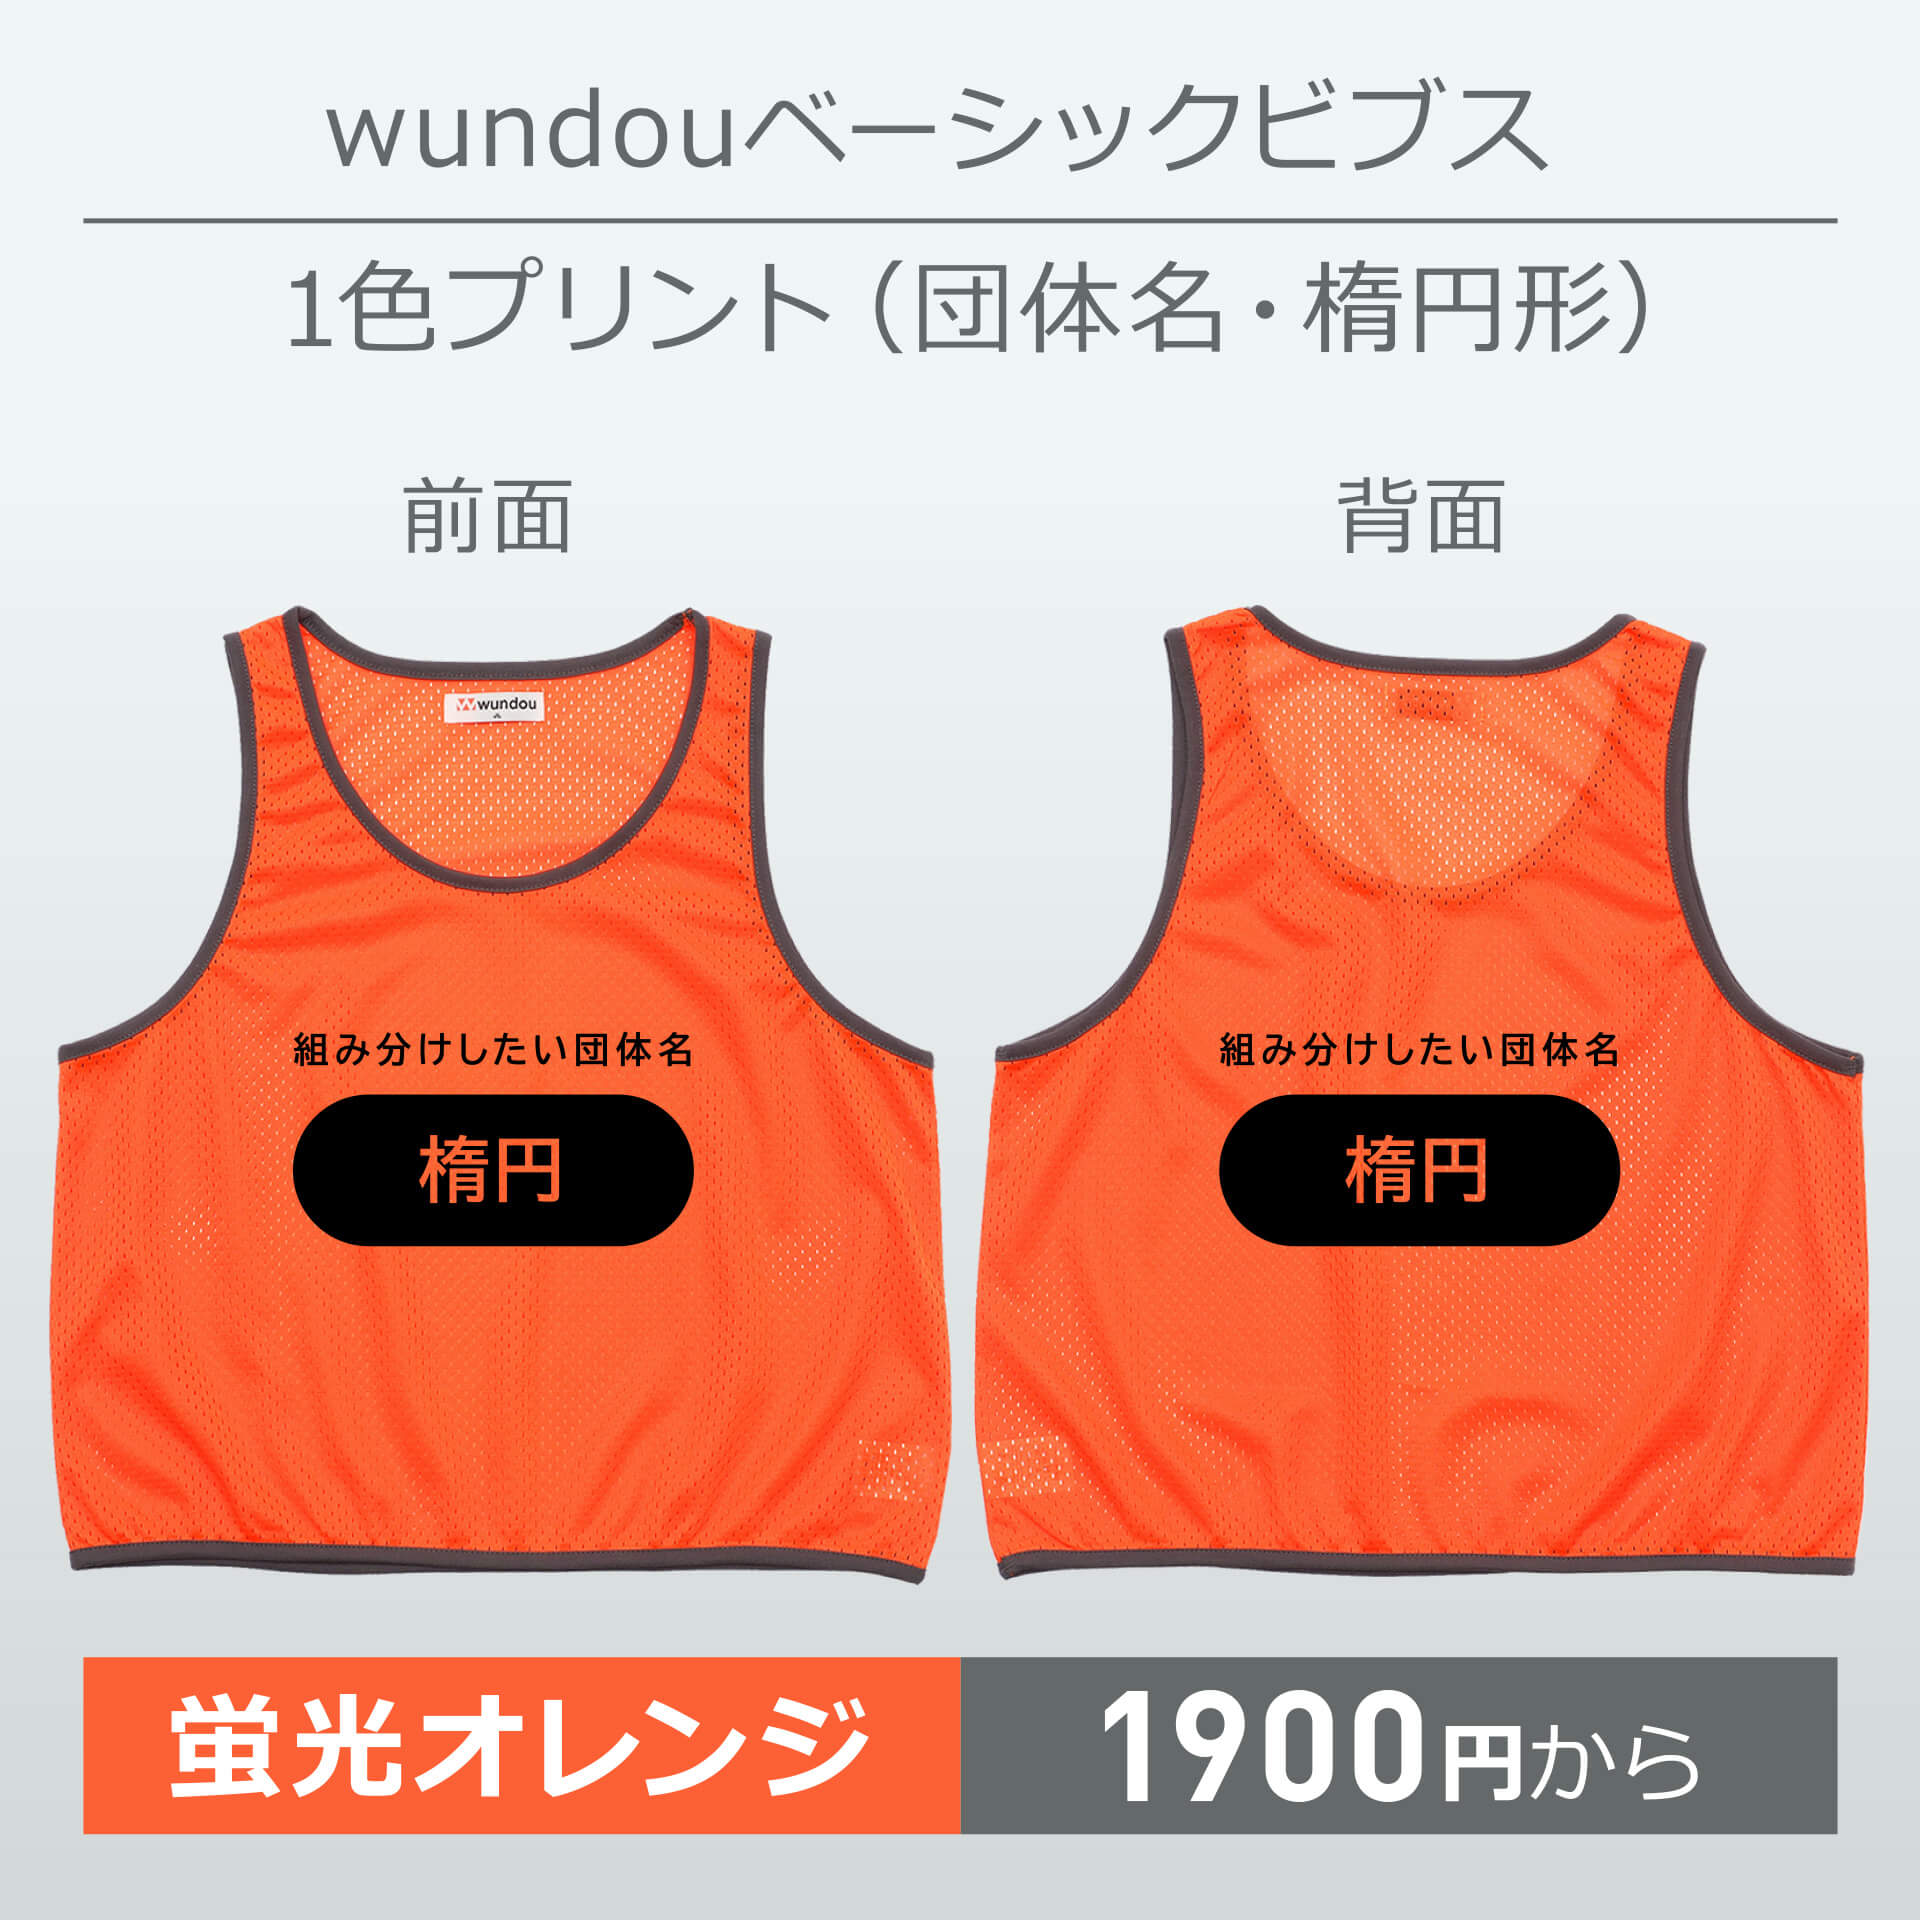 wundou・ベーシックビブス・1色プリント(団体名・楕円形)・蛍光オレンジ